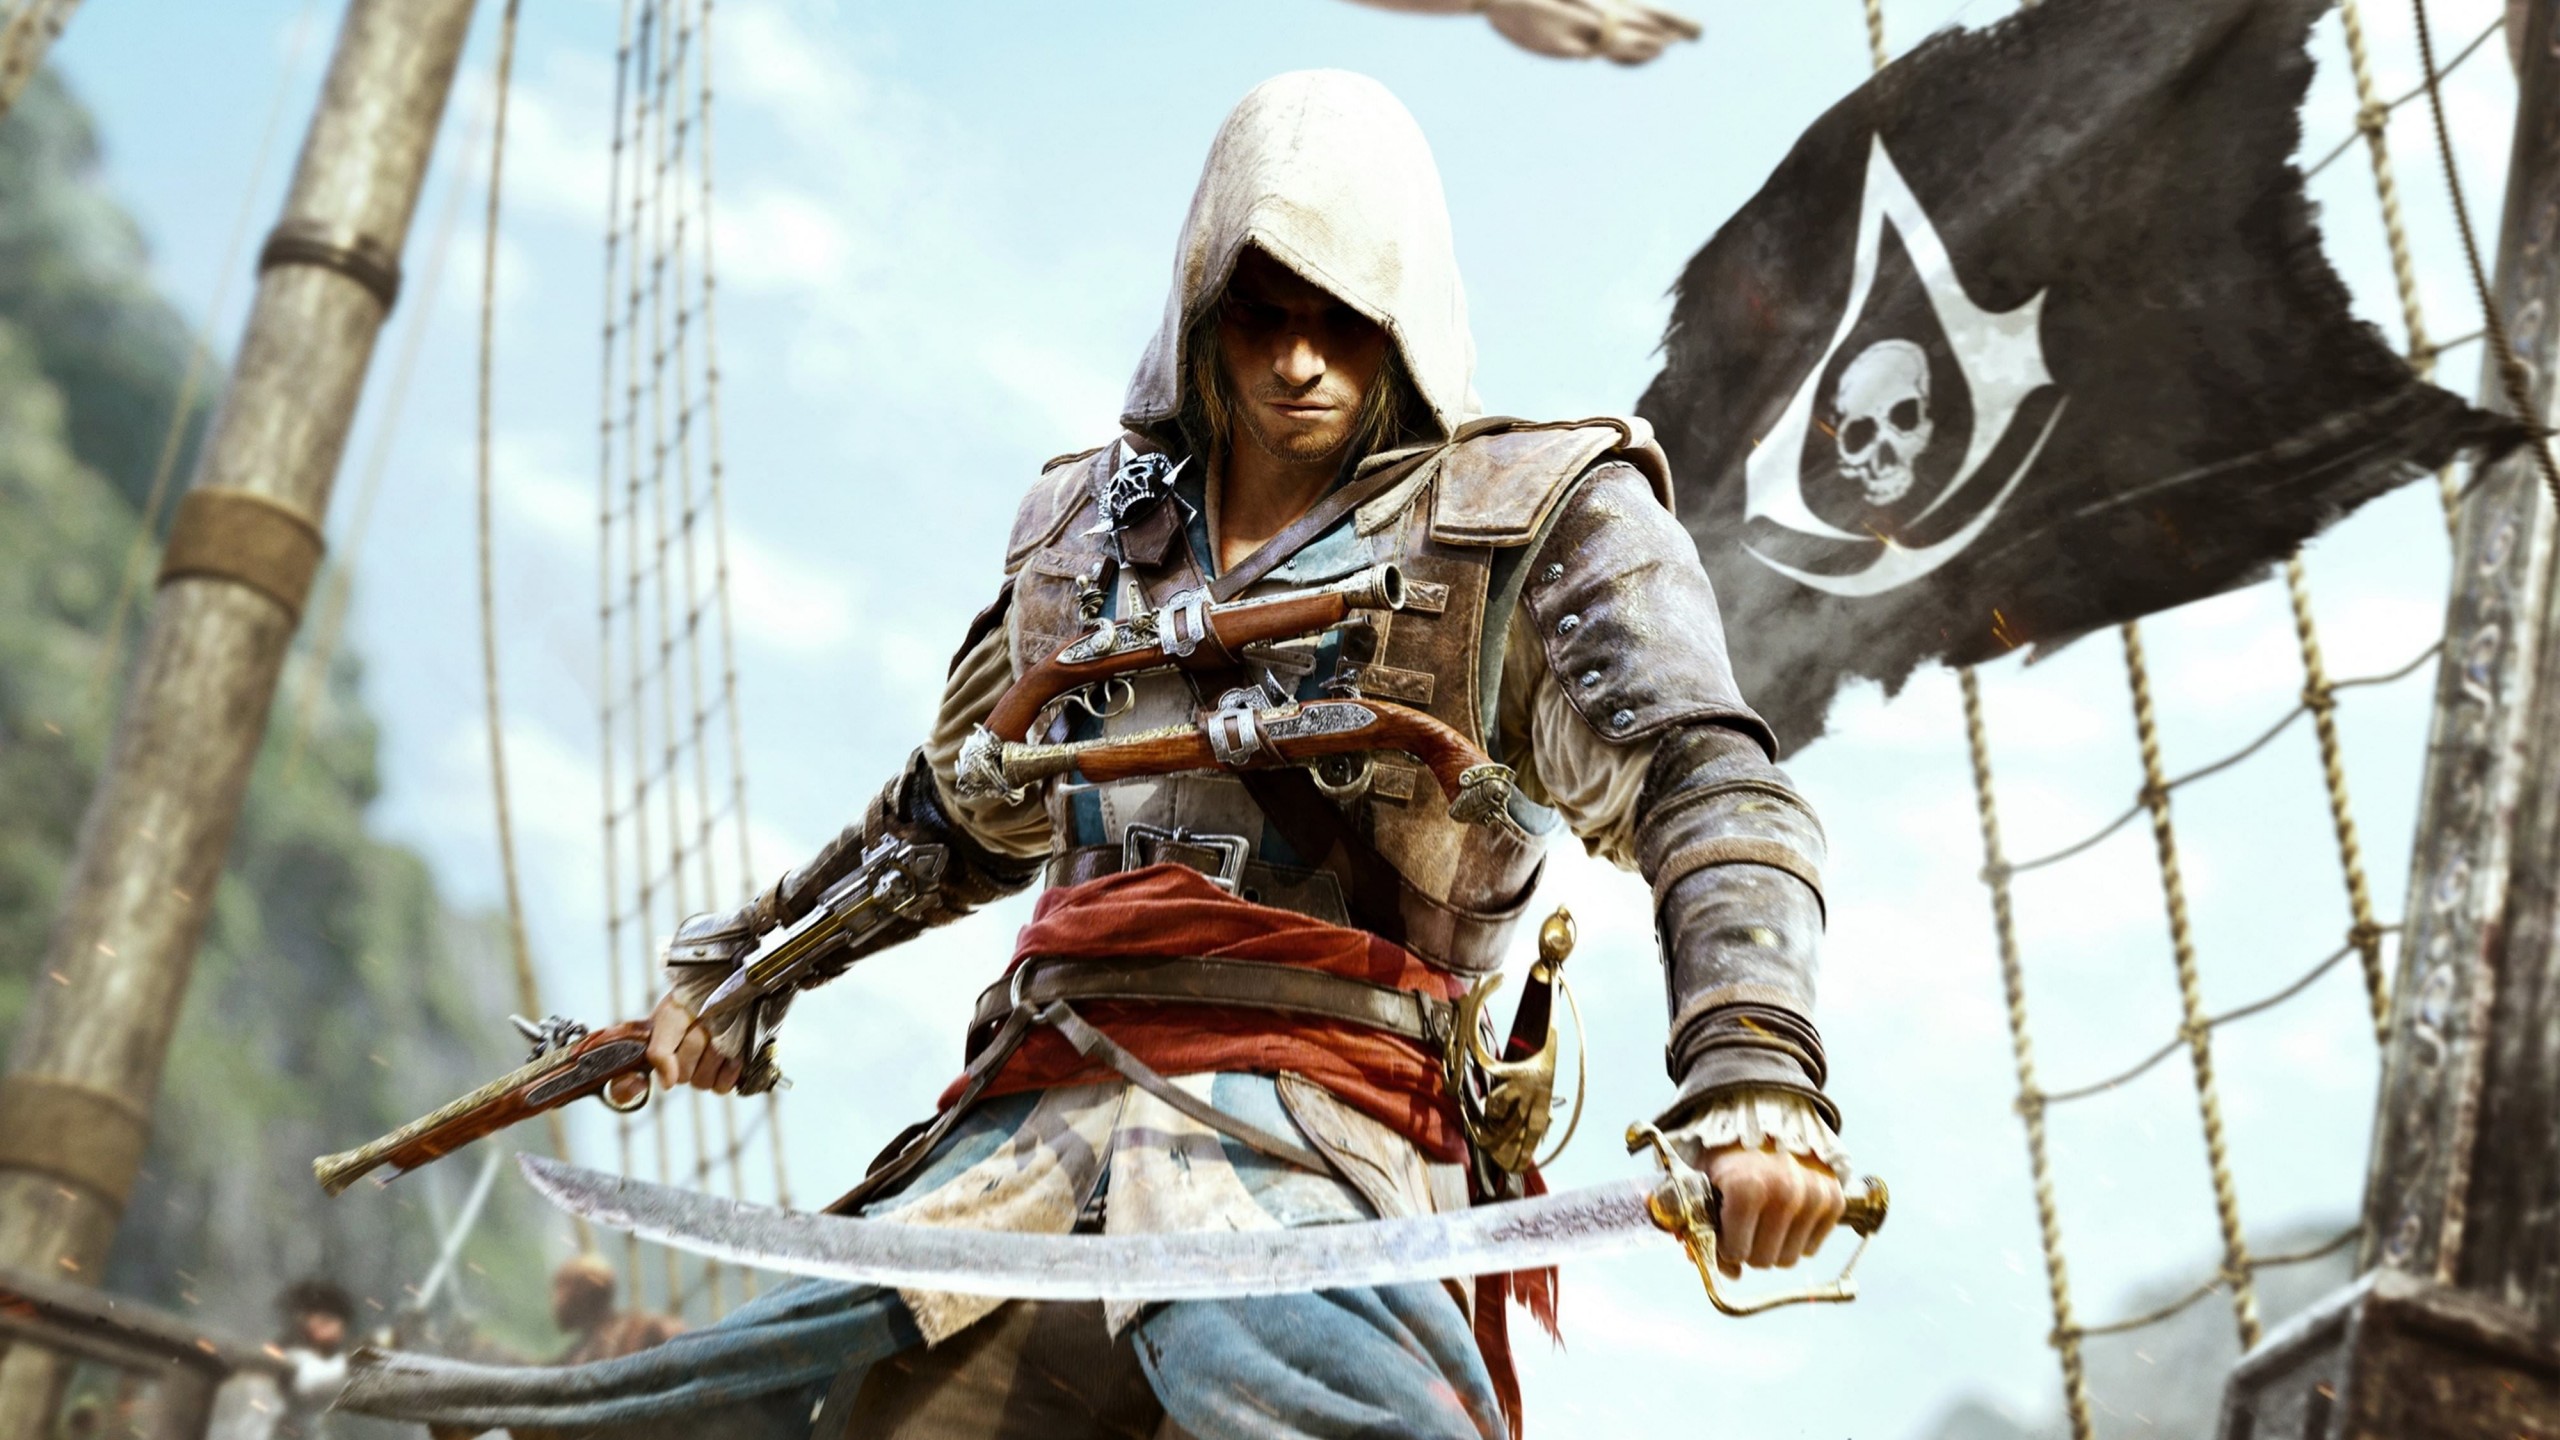 Assassin's Creed IV: Black Flag Wallpaper for Social Media YouTube Channel Art